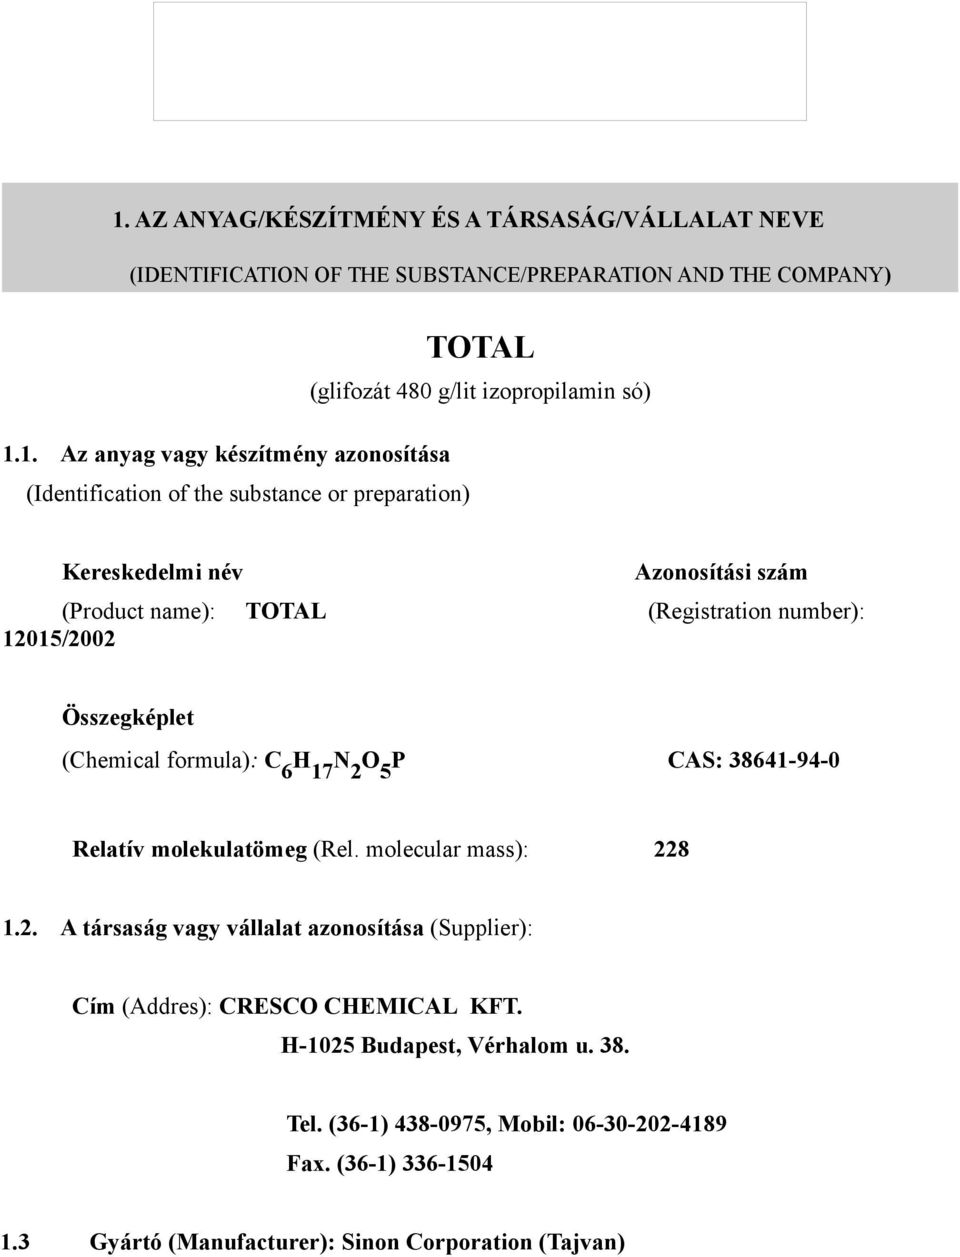 Összegképlet (Chemical formula): C 6 H 17 N 2 O 5 P CAS: 38641-94-0 Relatív molekulatömeg (Rel. molecular mass): 228 1.2. A társaság vagy vállalat azonosítása (Supplier): Cím (Addres): CRESCO CHEMICAL KFT.